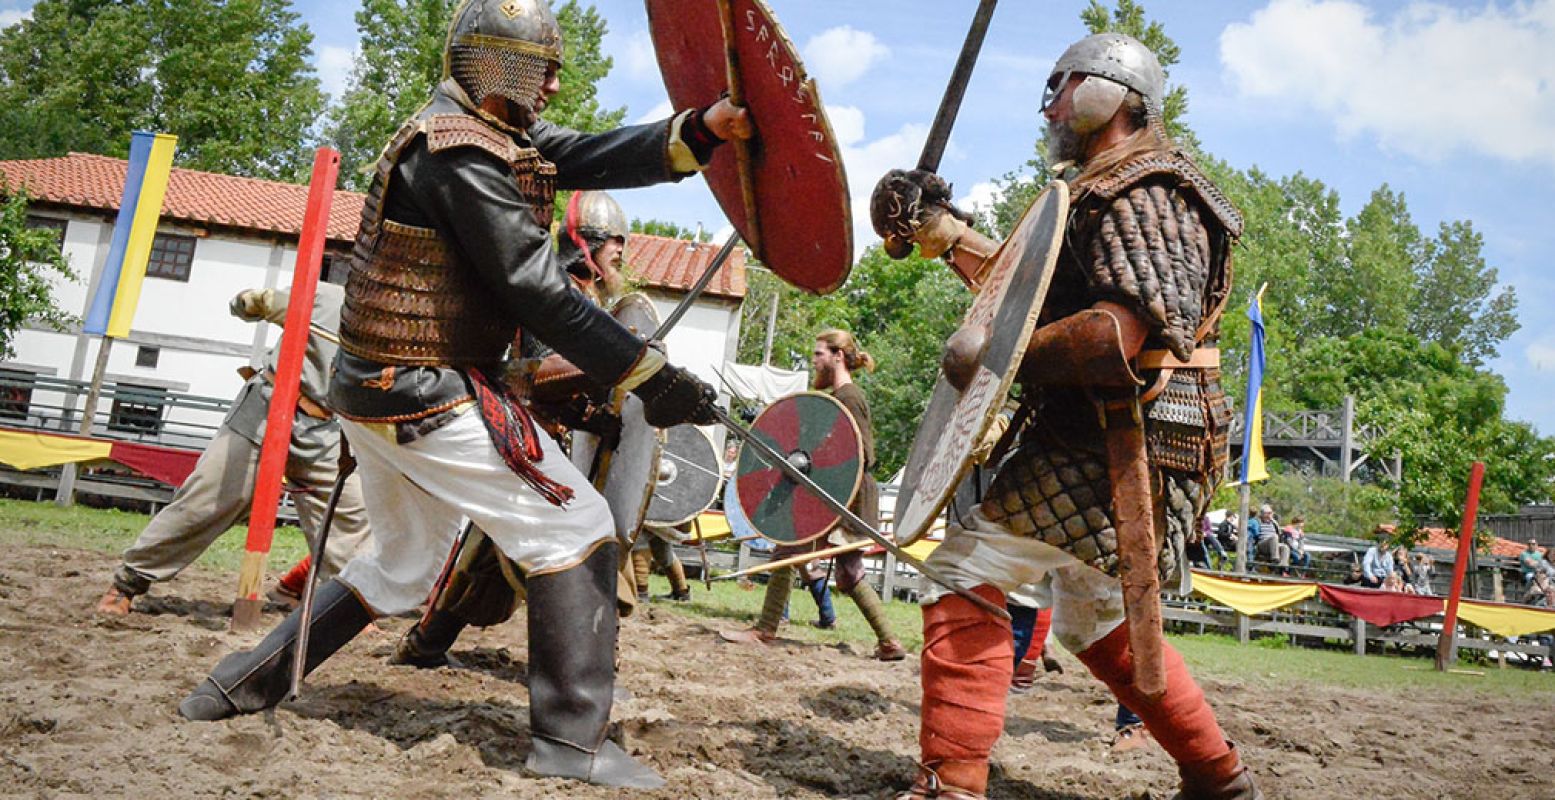 Ook tijdens de vreedzame Vikingweek kunnen de Vikingen het niet laten om te pronken met hun vechtkunst. Foto: Museumpark Archeon